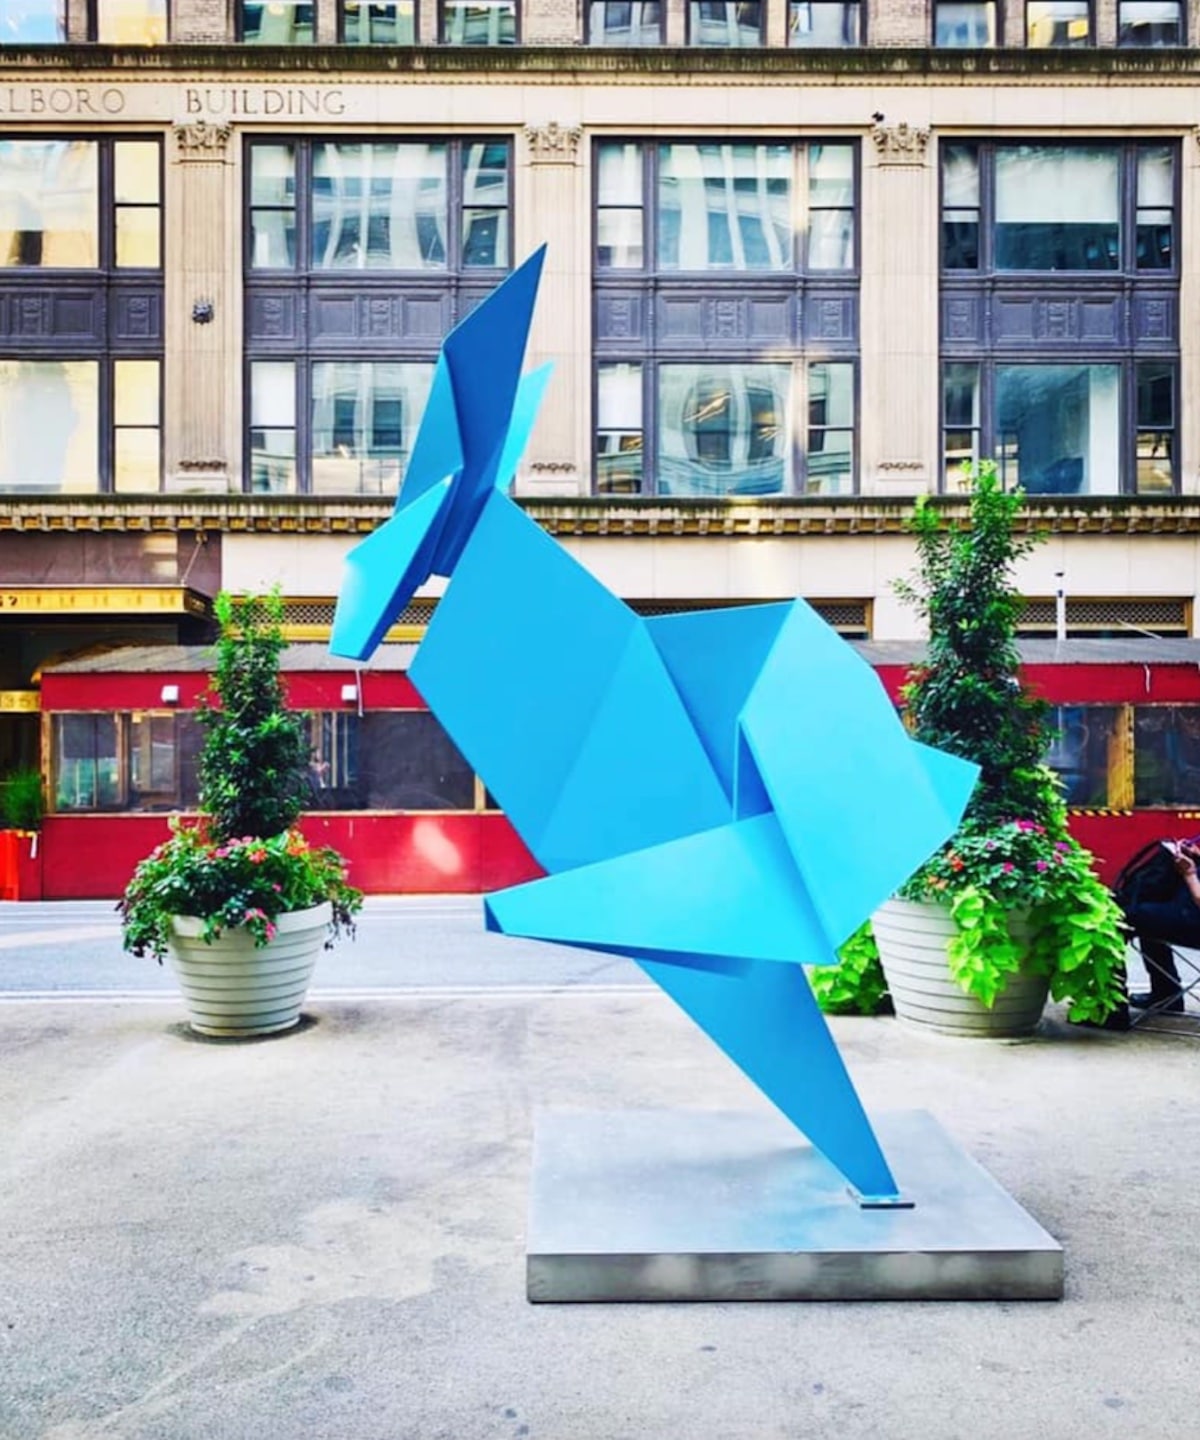 Gigantescas esculturas de origami en el Garment District de Nueva York por Hacer